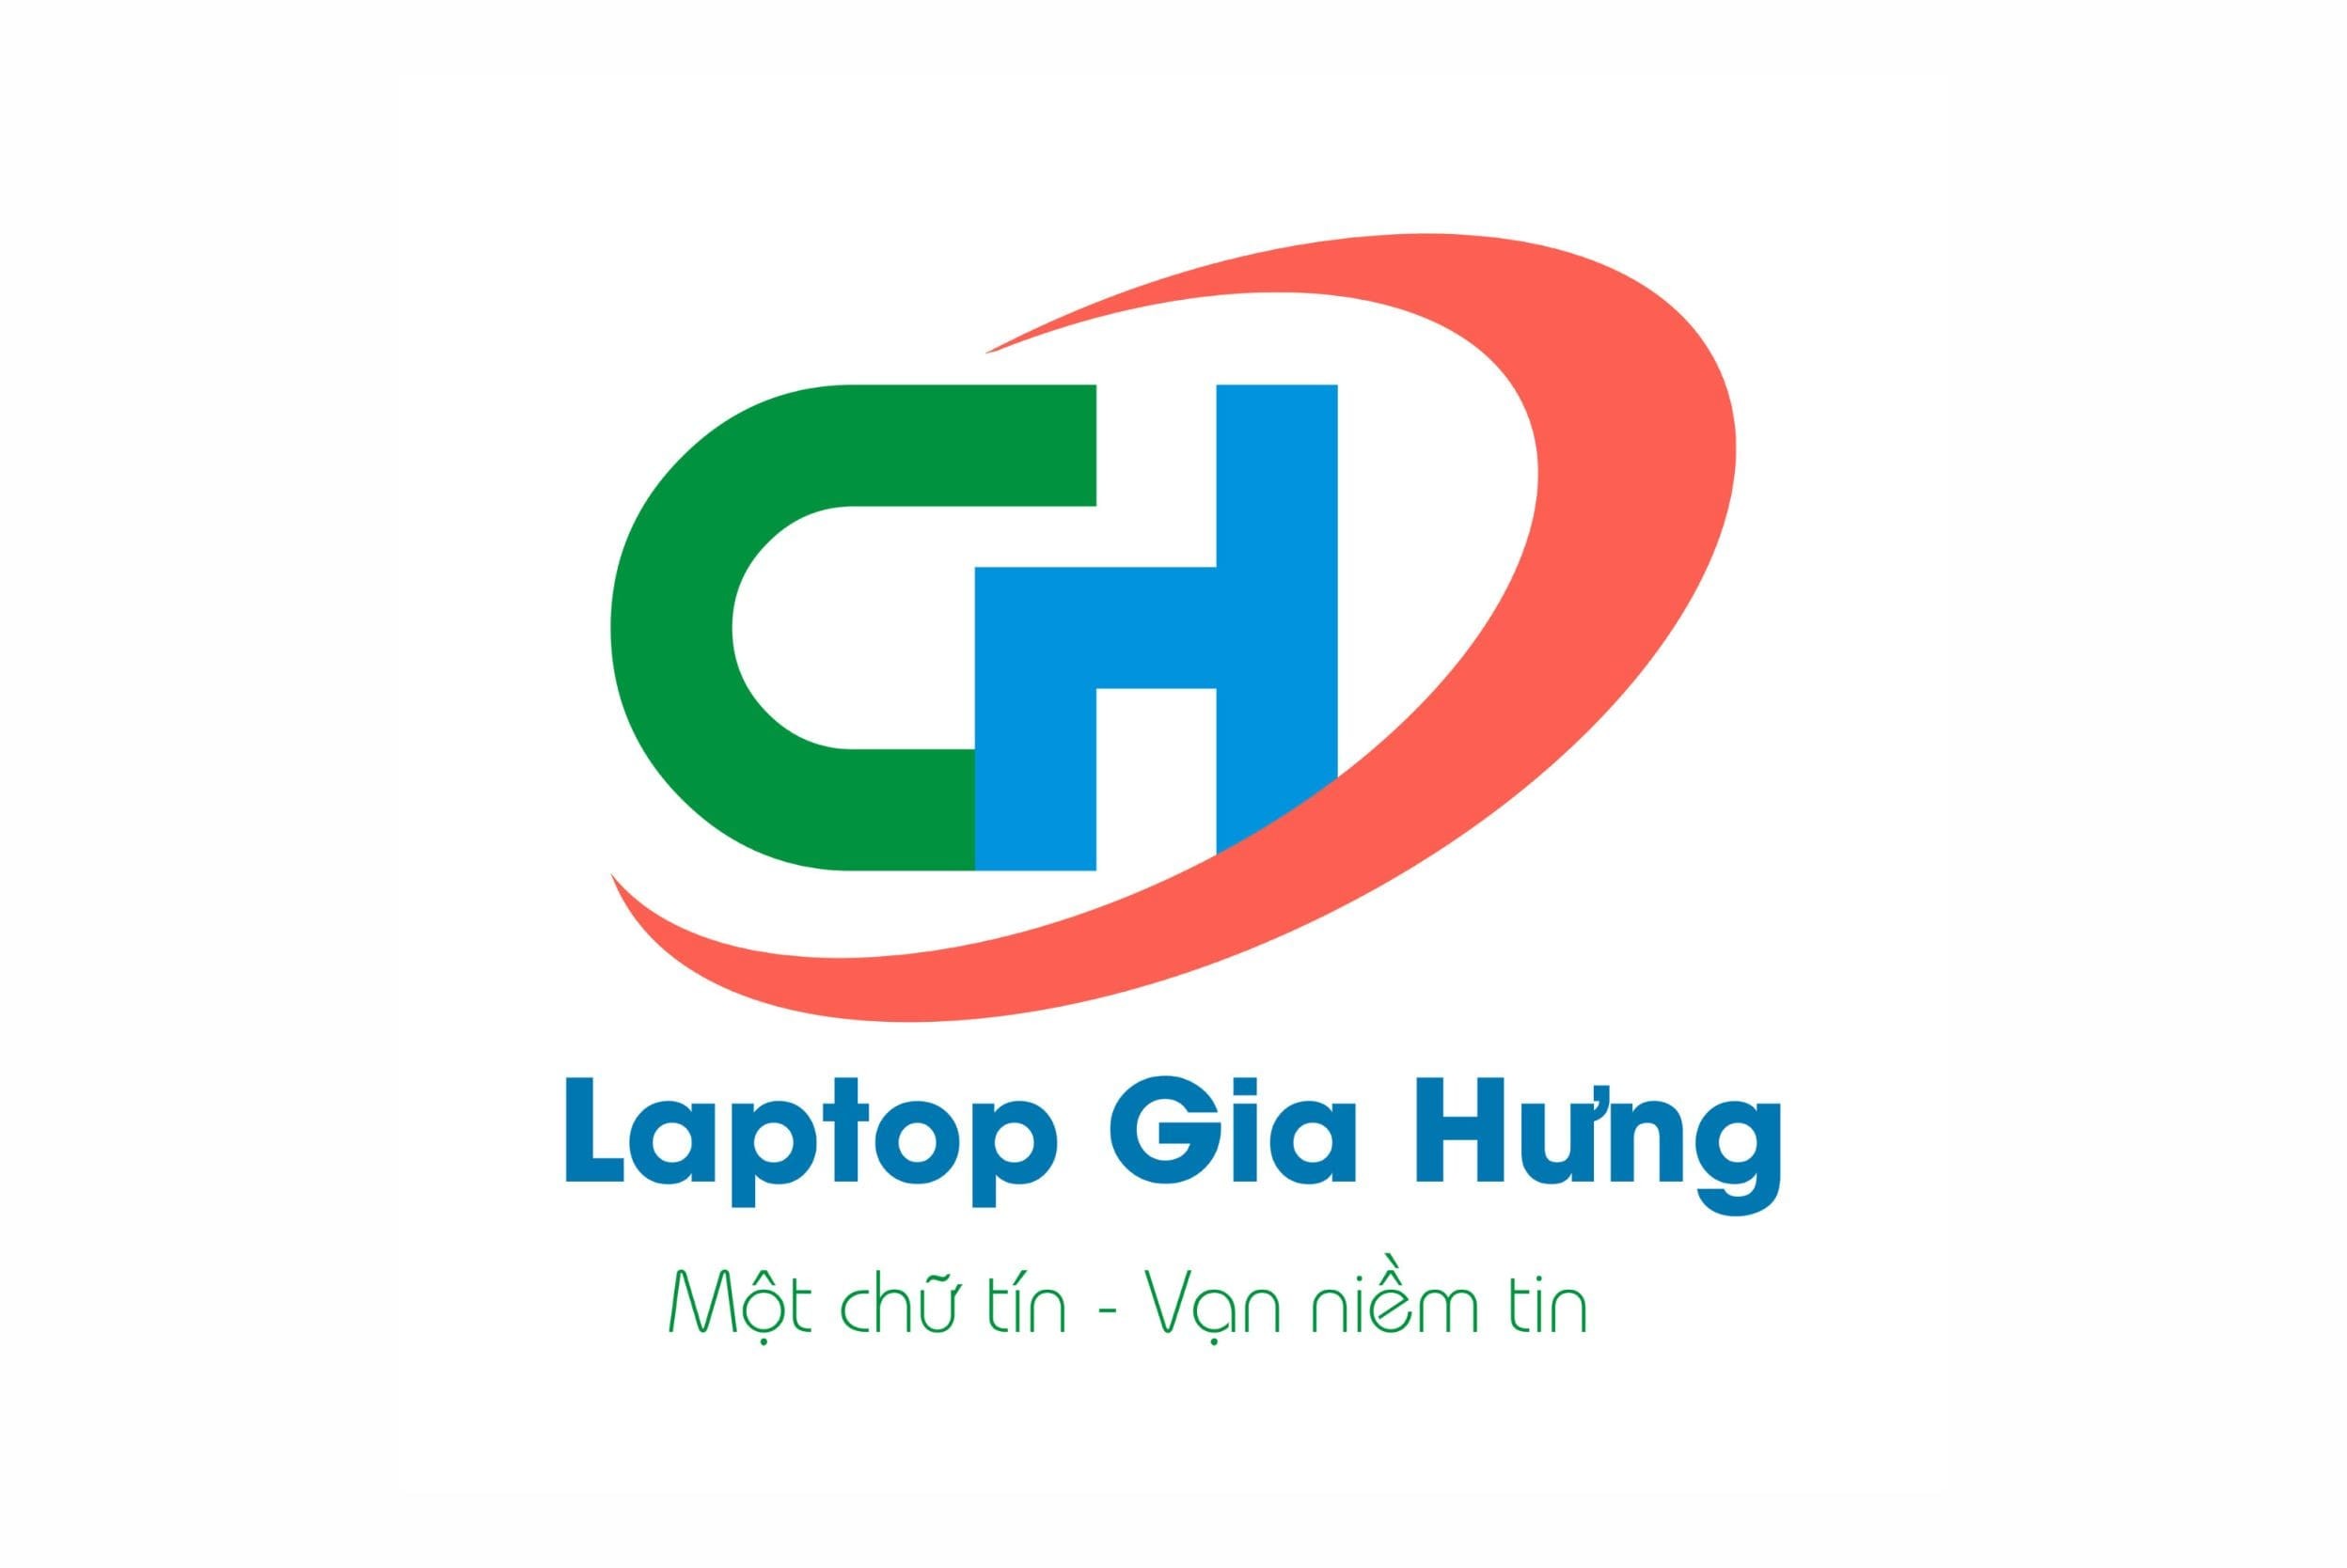 laptop-gia-hung-logo